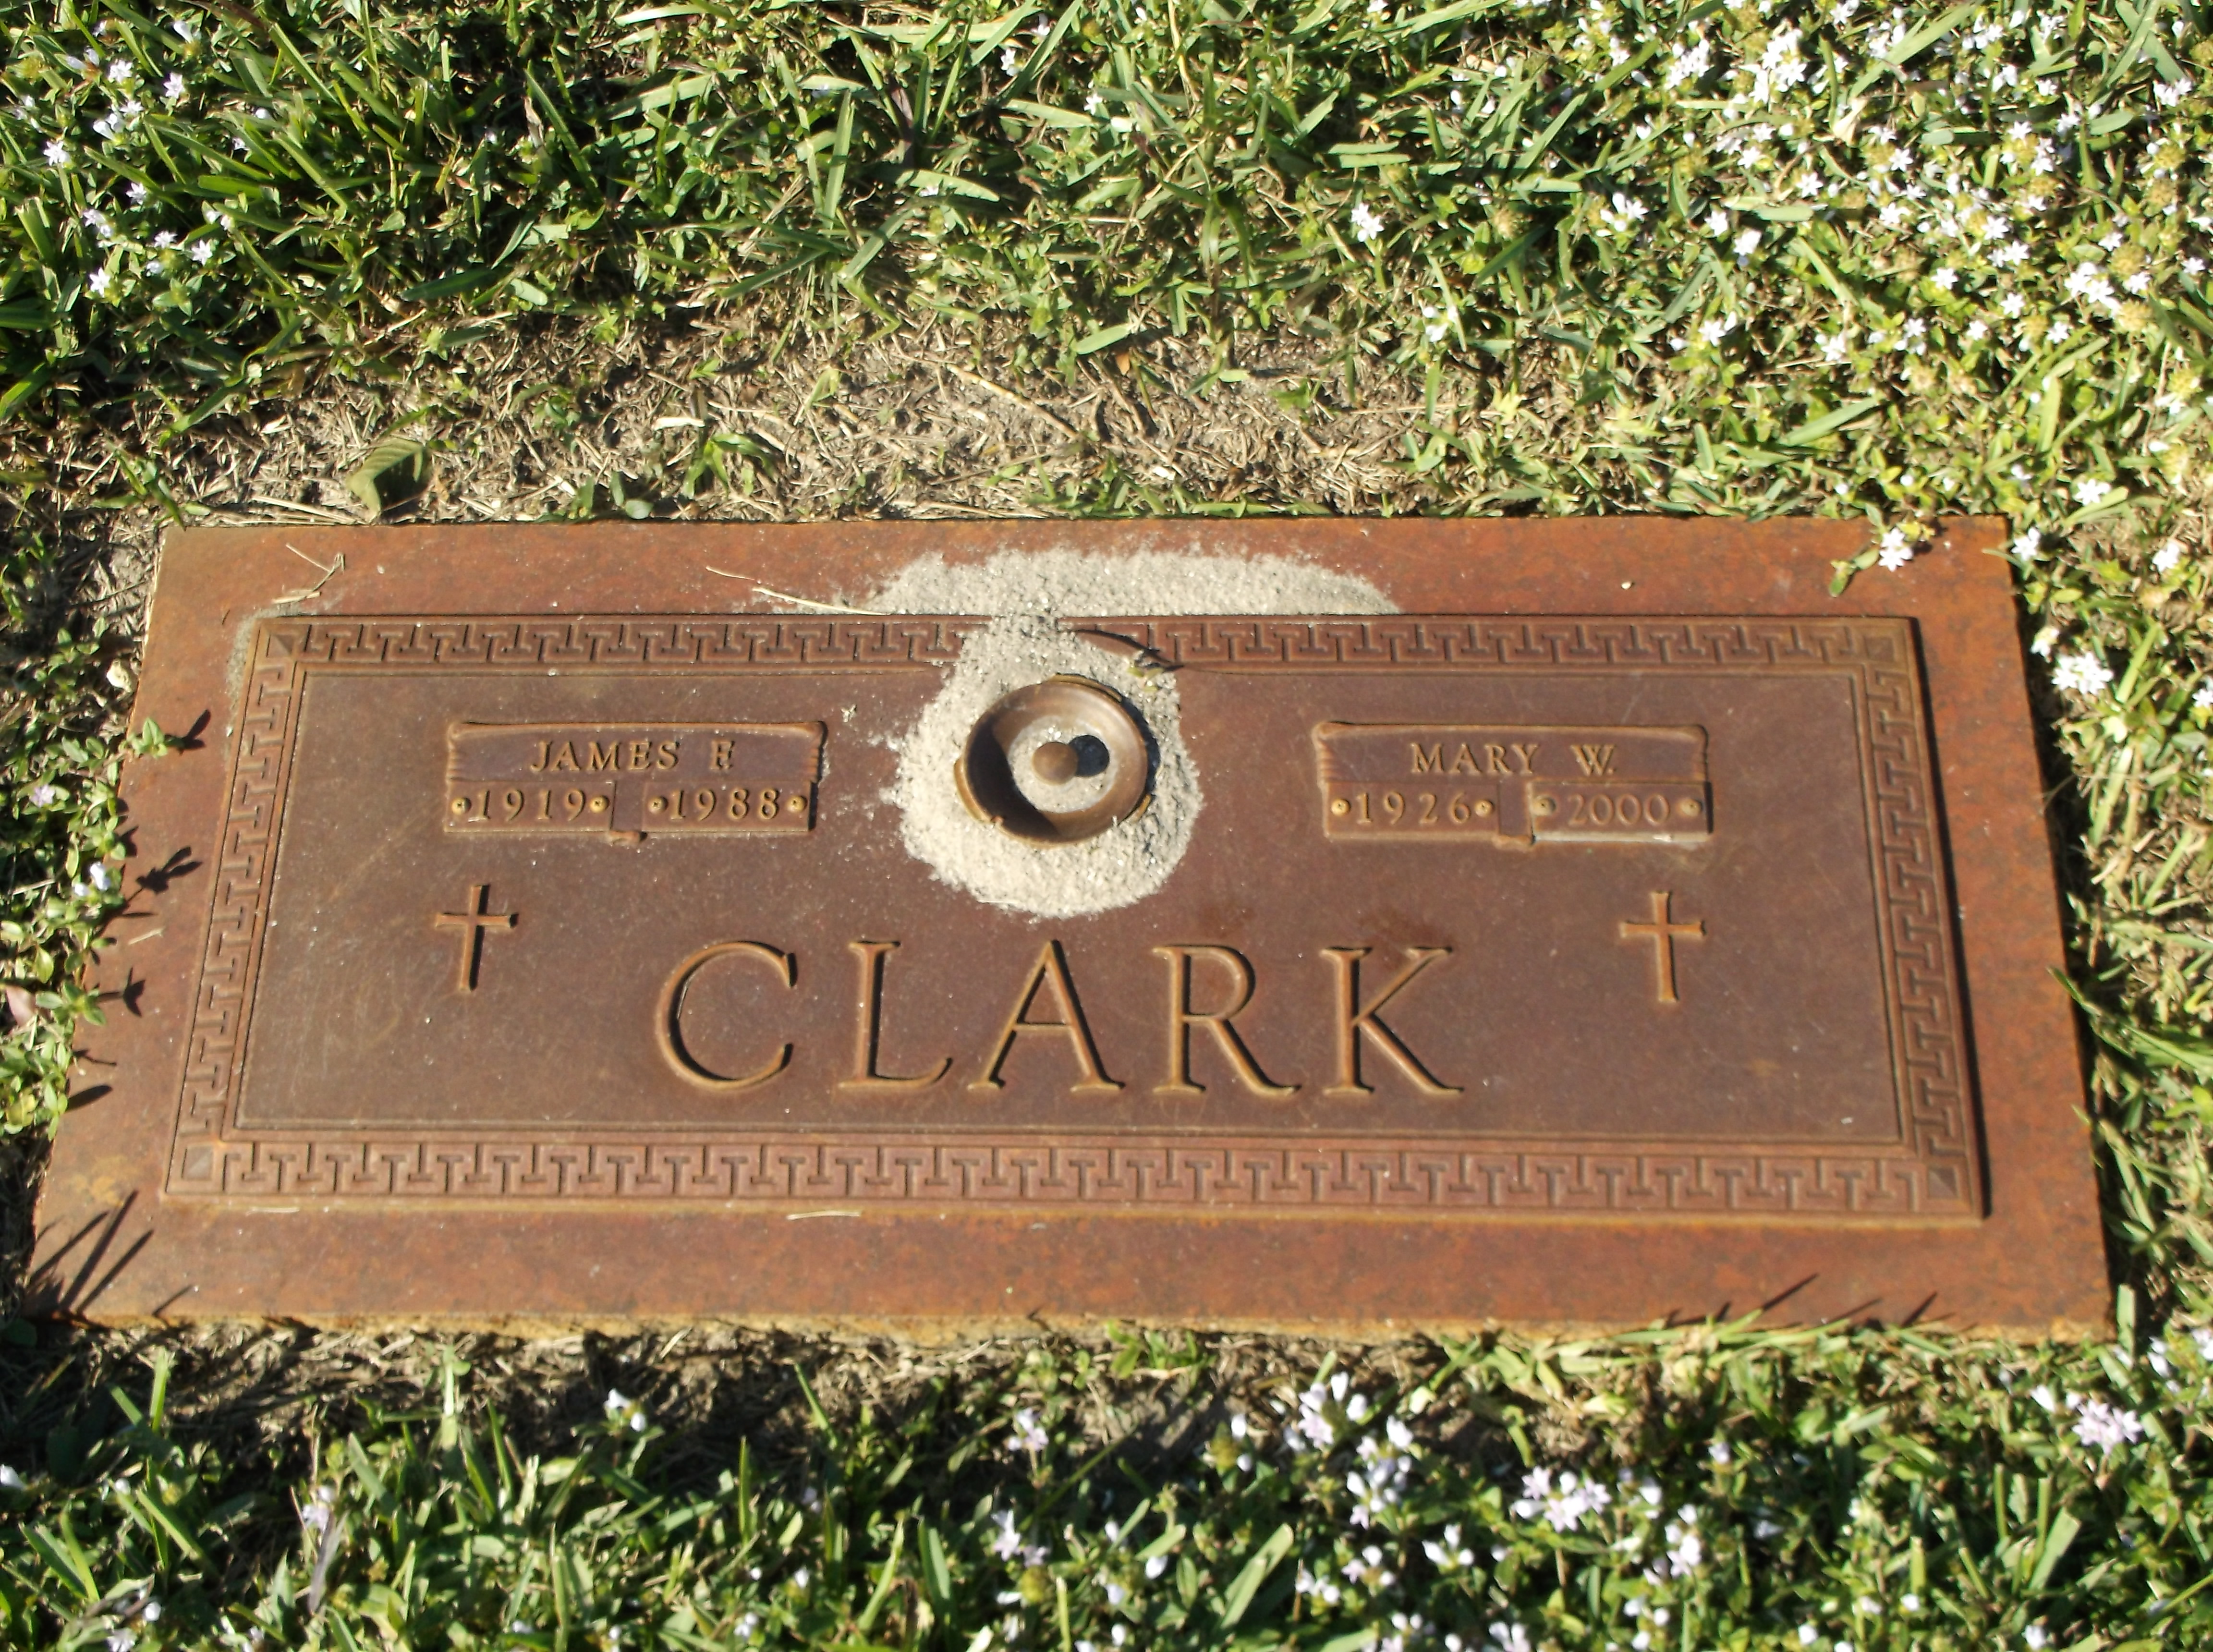 Mary W Clark